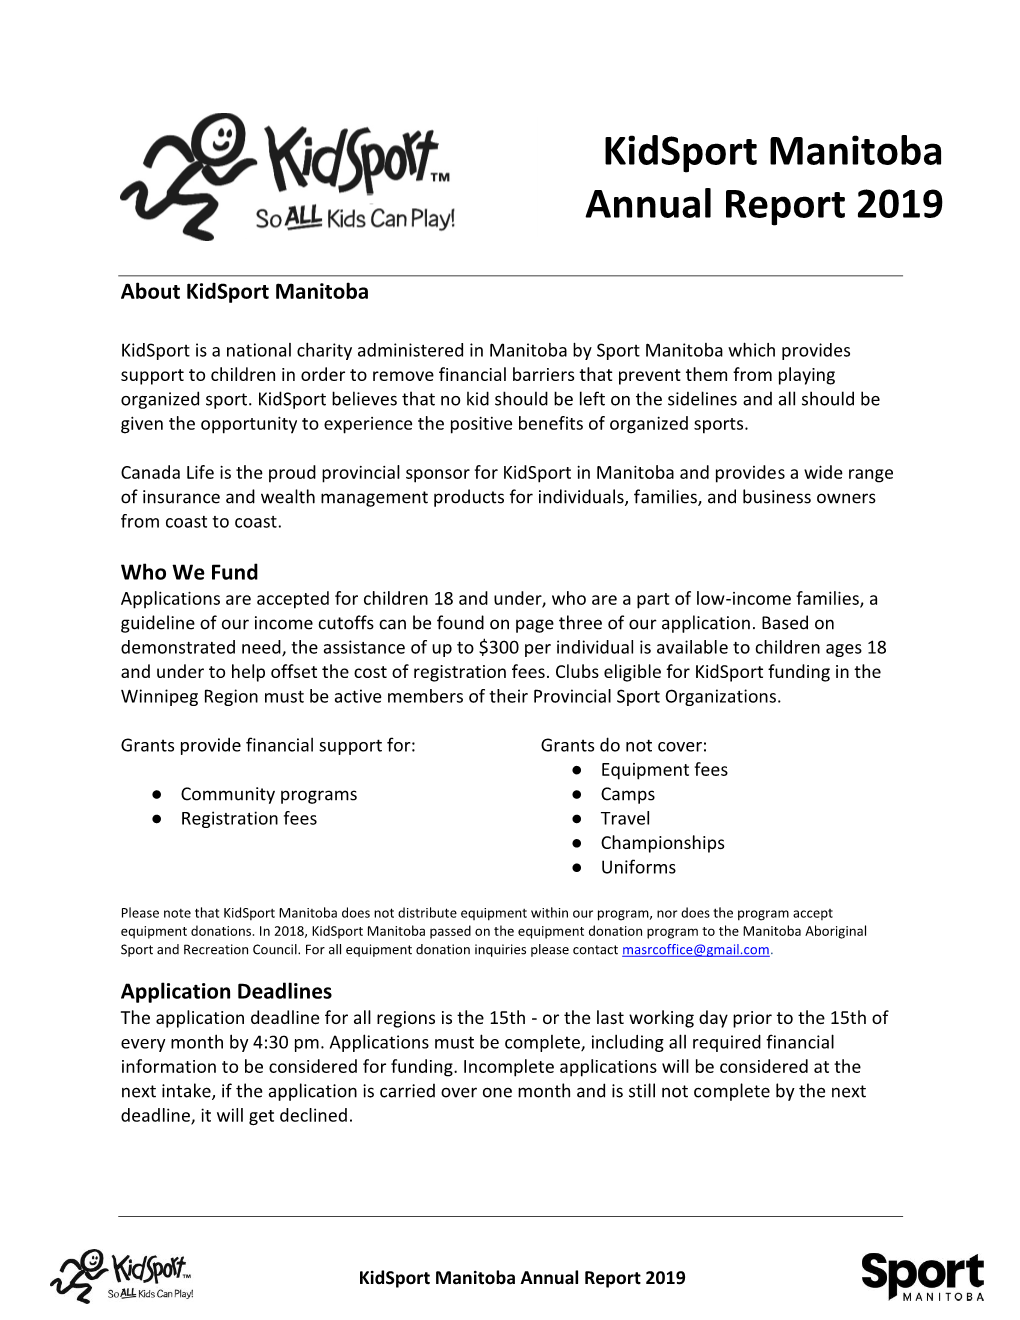 Kidsport Manitoba Annual Report 2019